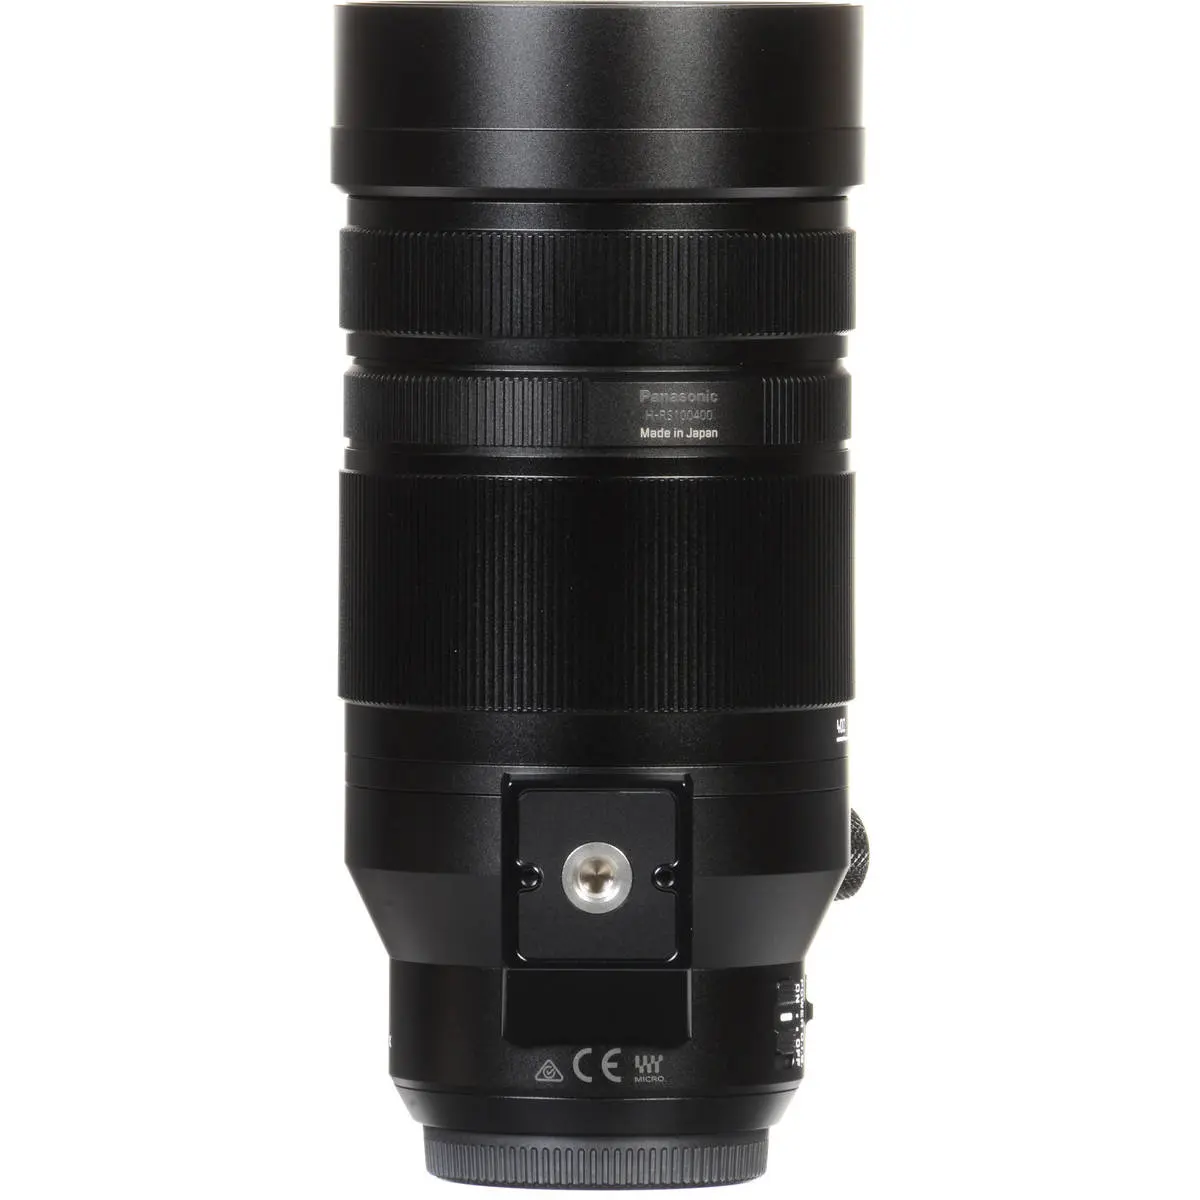 8. Panasonic DG V-Elmar 100-400mm F4.0-6.3 ASPH OIS Lens